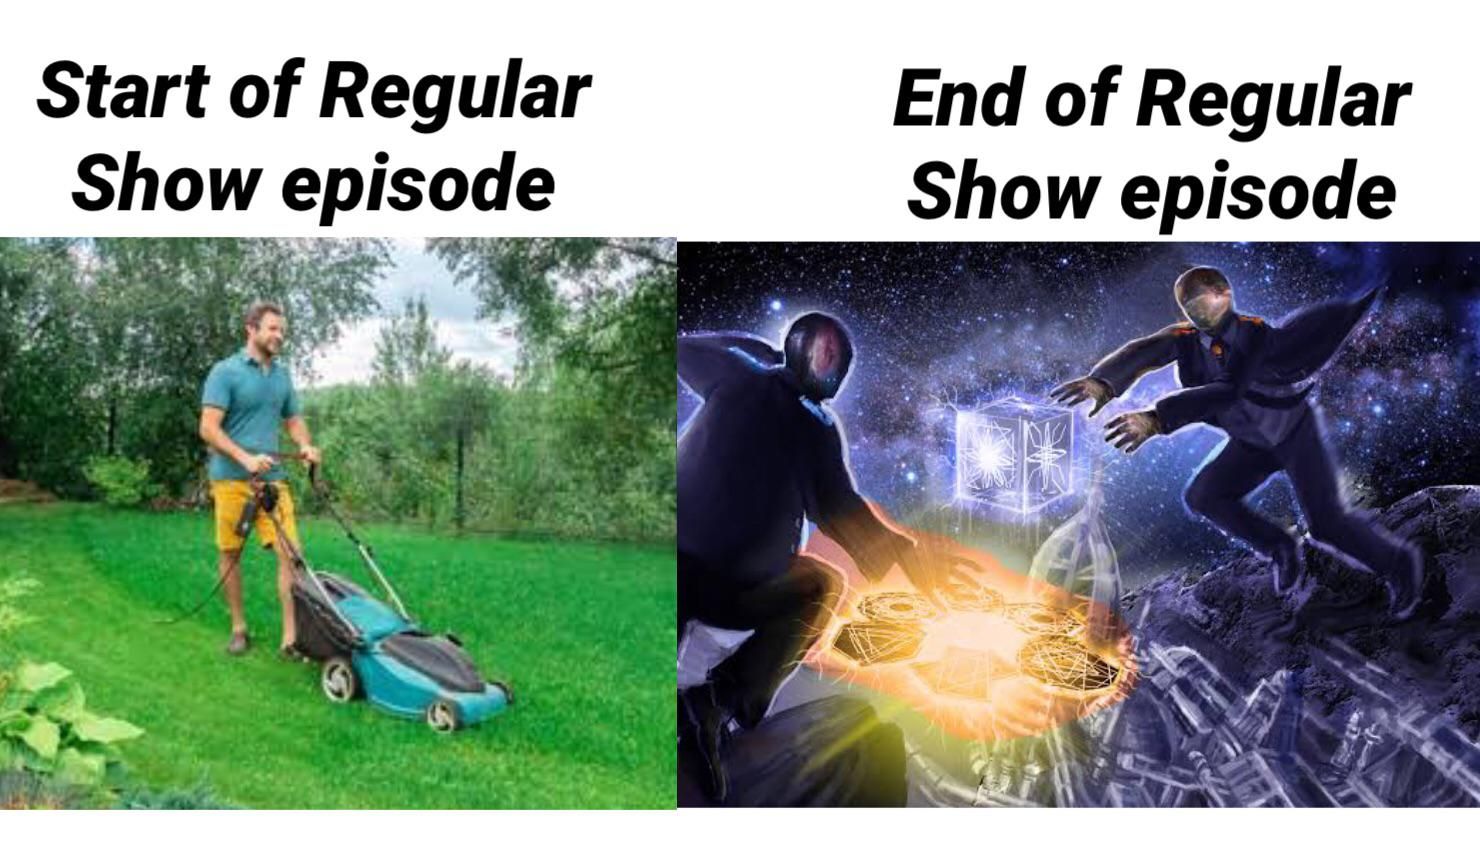 Regular show based